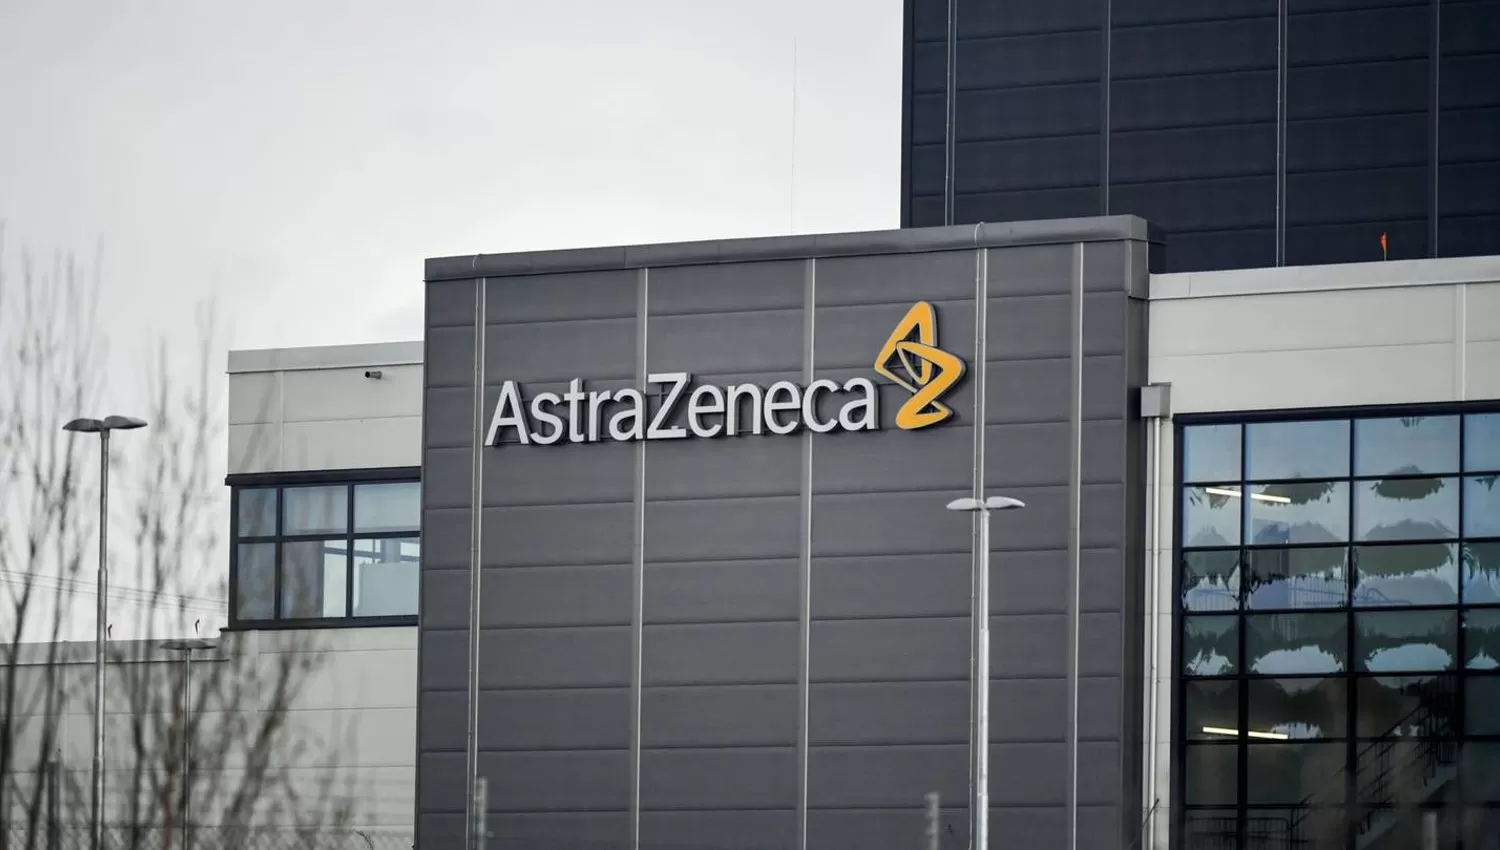 EN DESARROLLO. La firma Astrazeneca probó el cóctel de medicamentos contra la Covid-19 en pacientes de riesgo y con comorbilidades.